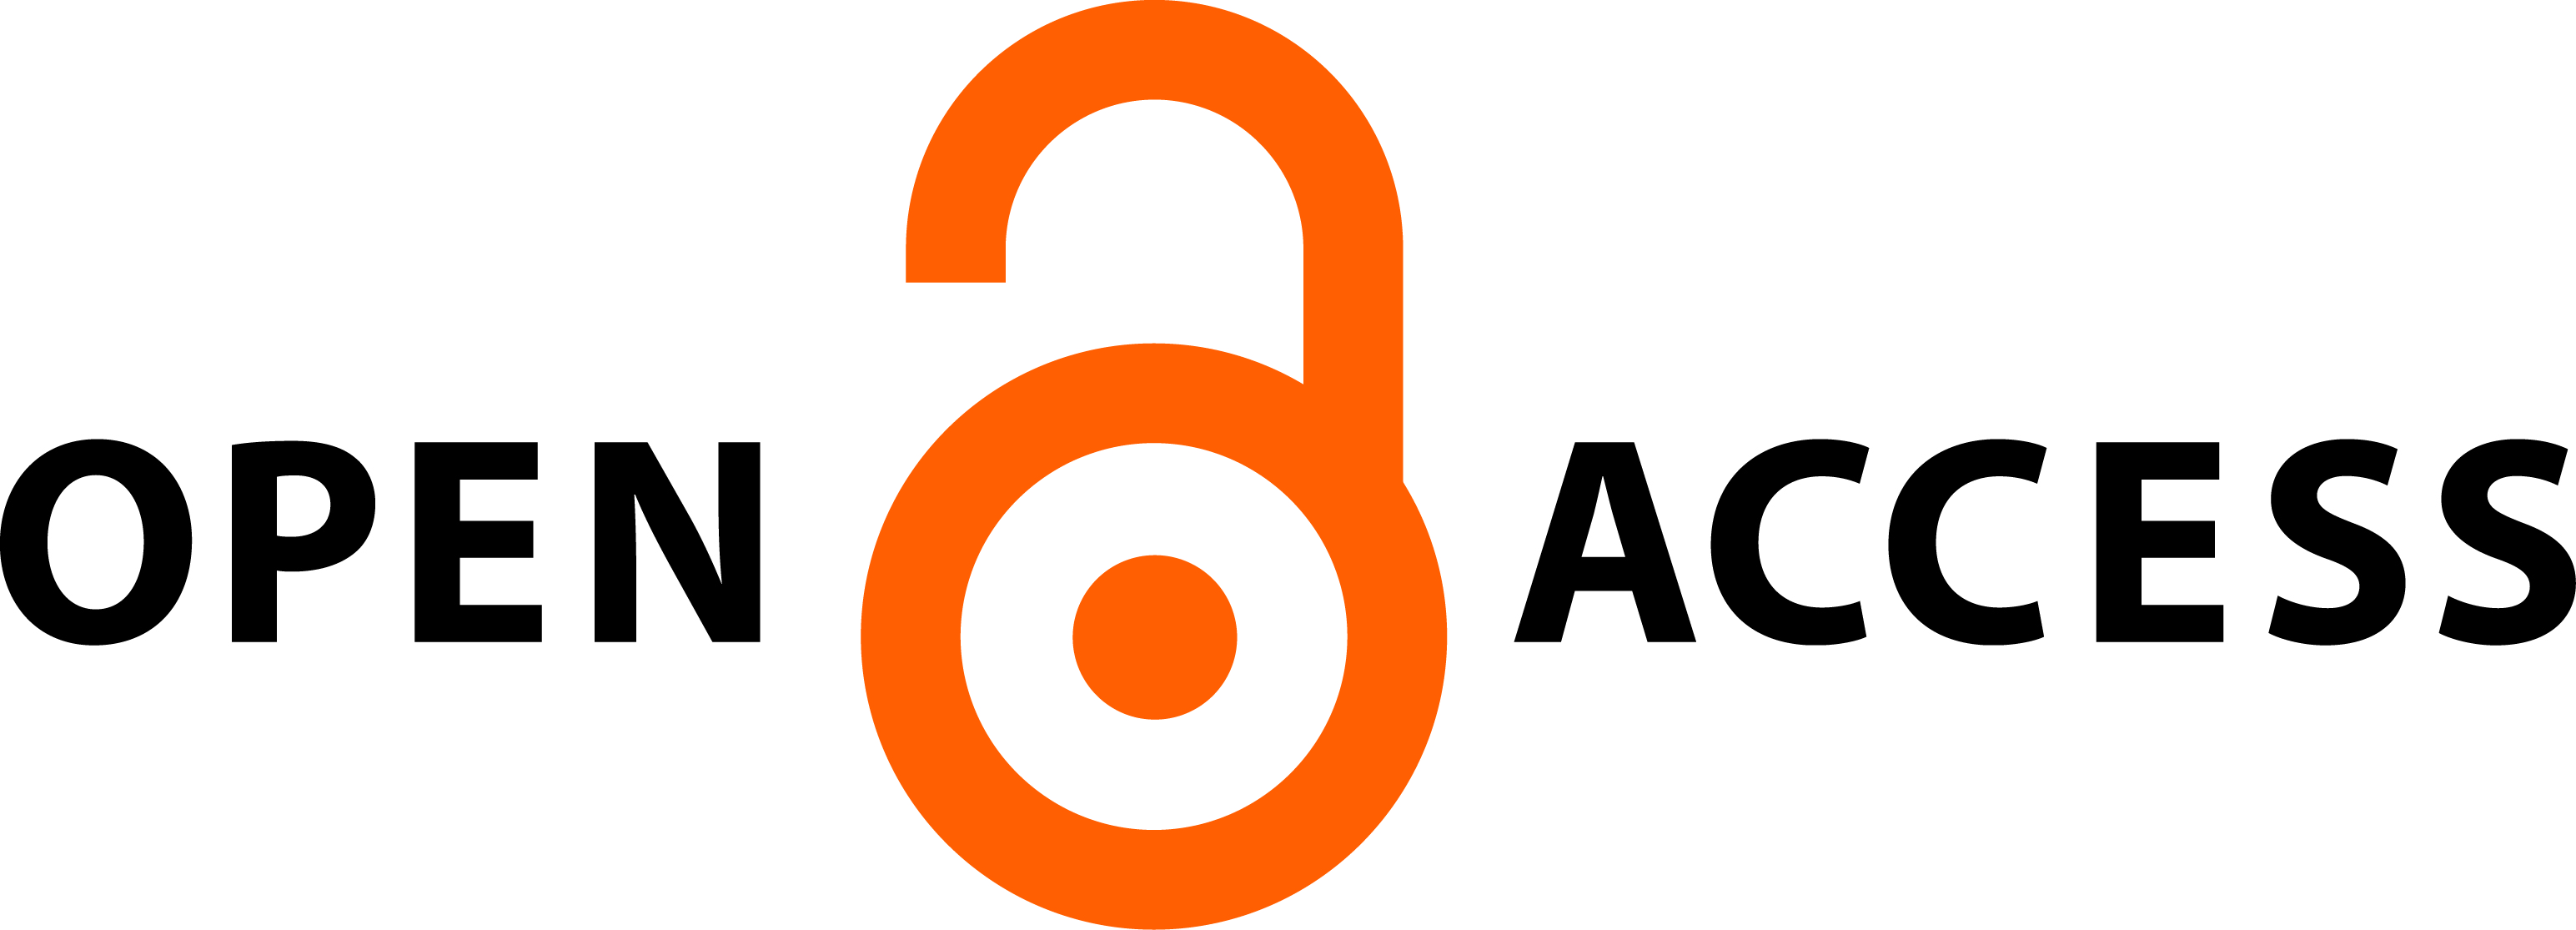 Open Access logo - Open Access